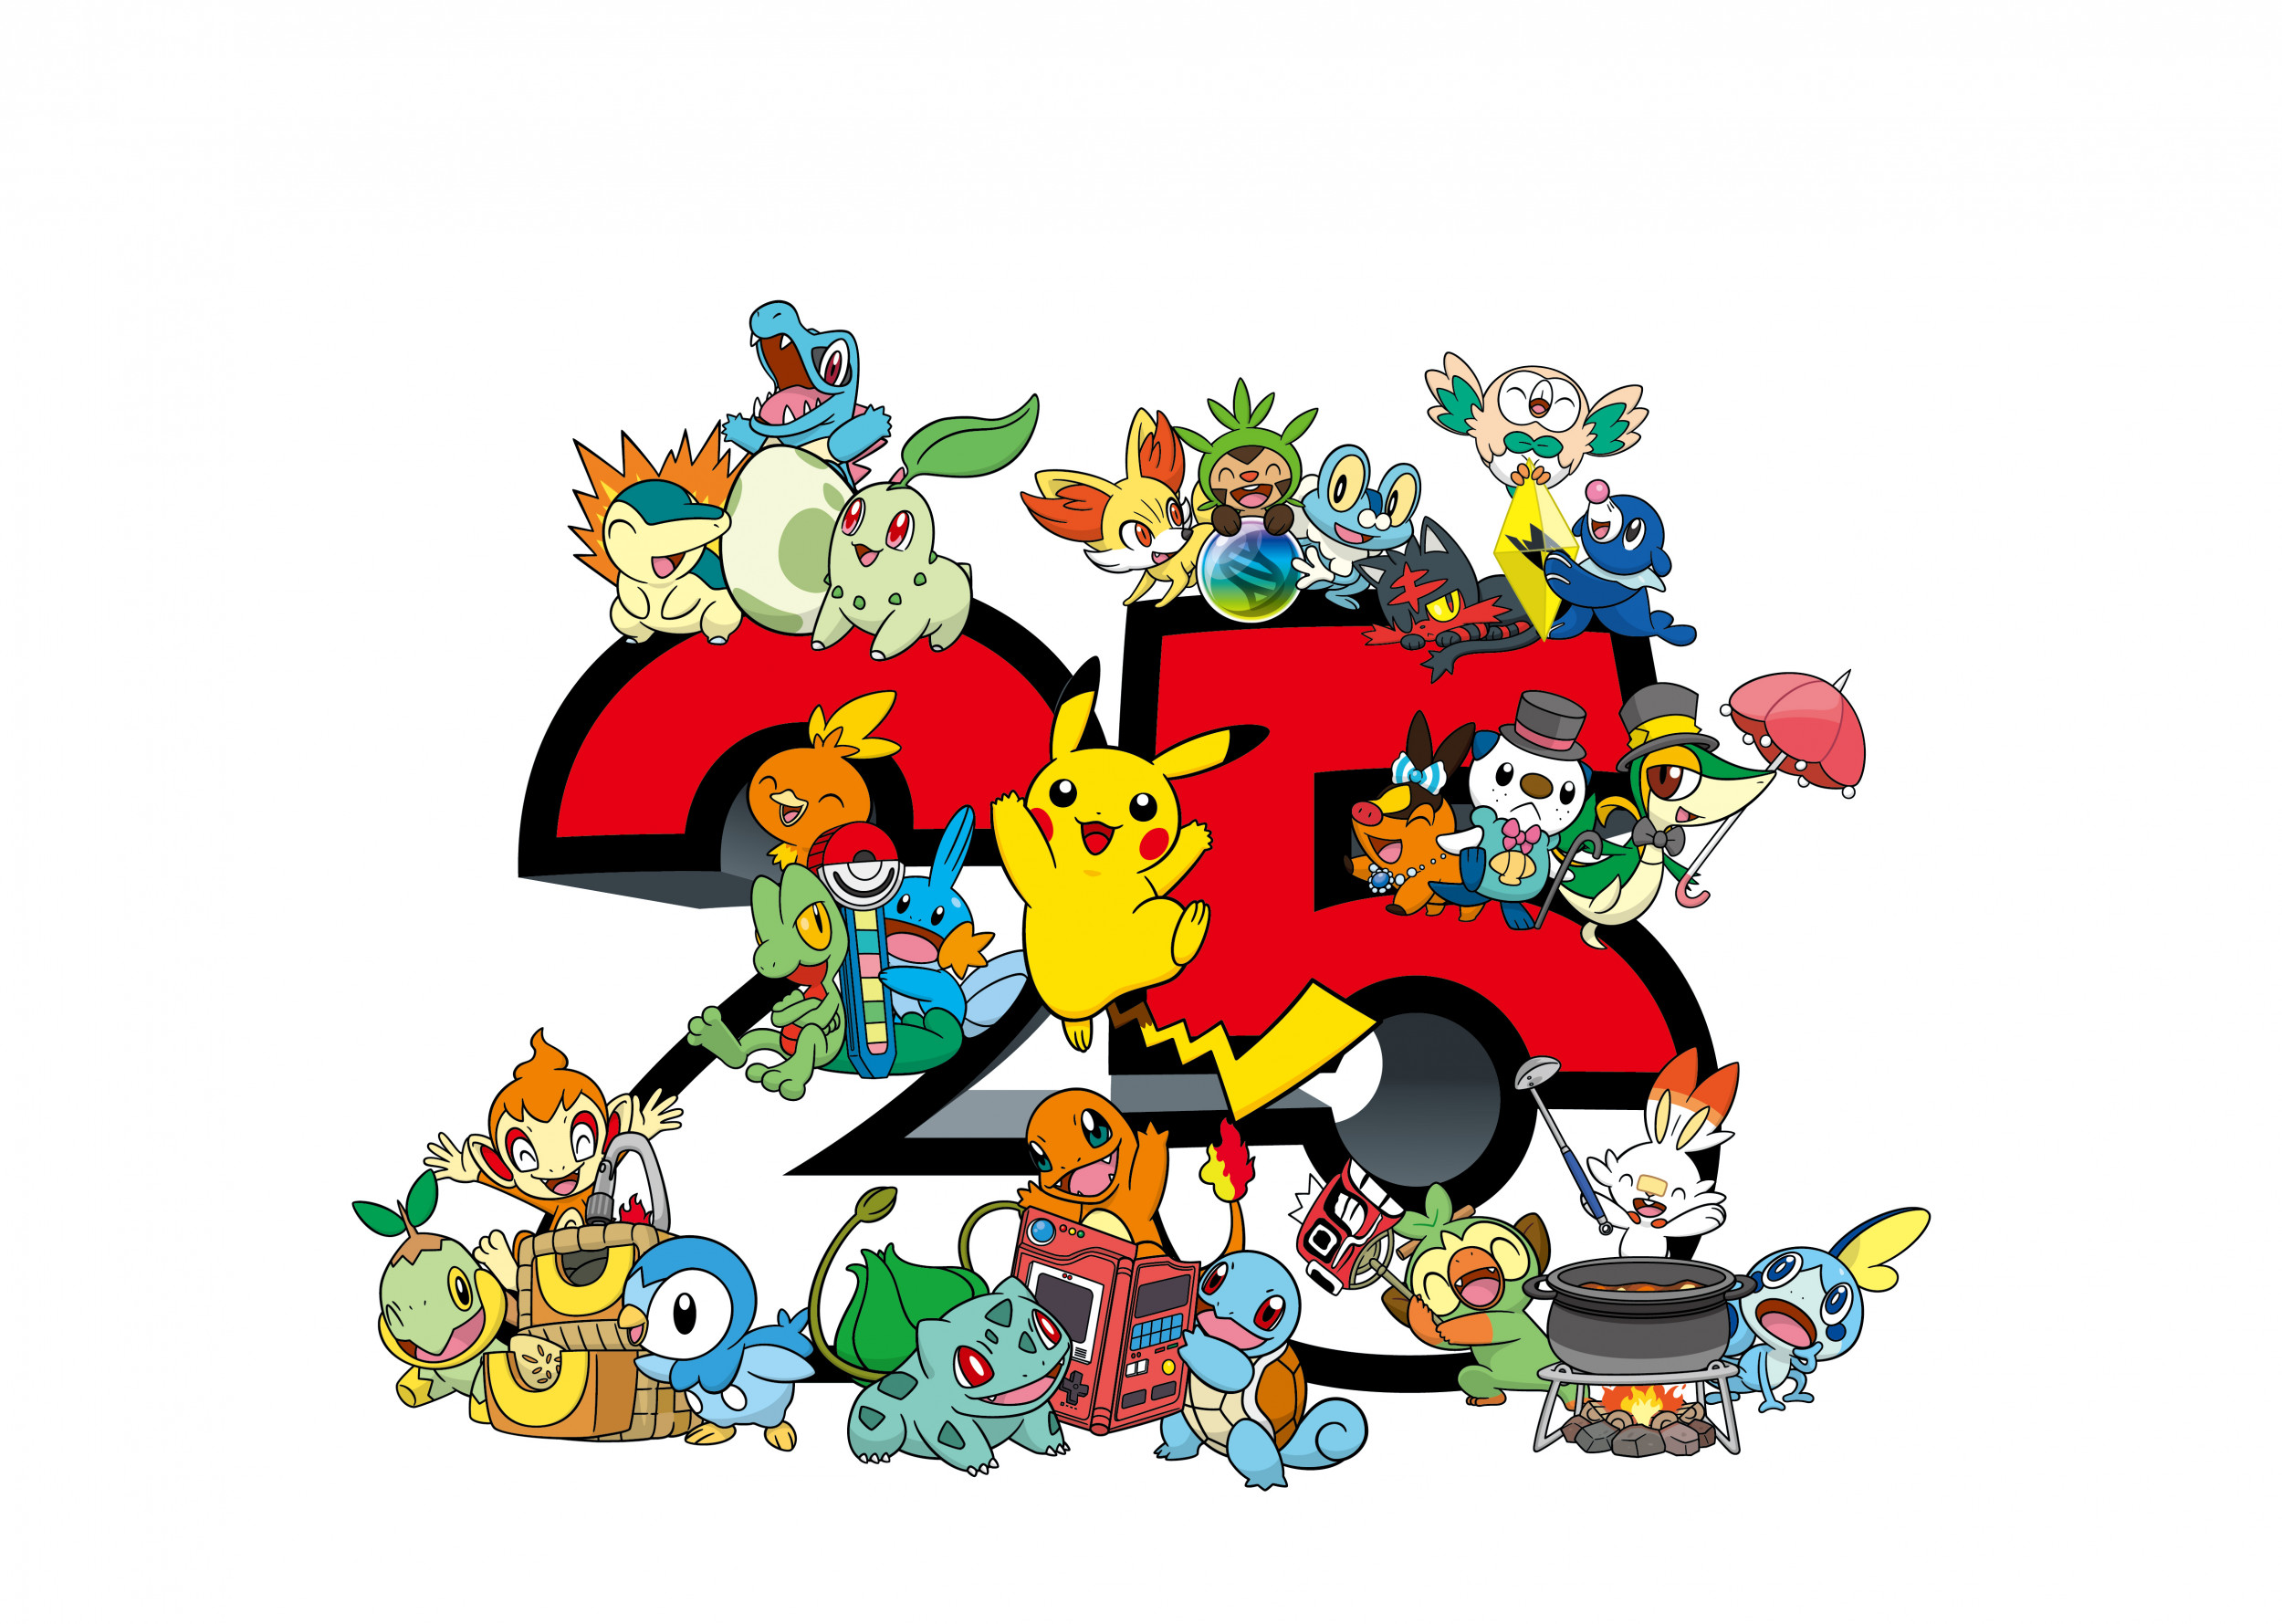 Os 10 Pokémon mais fortes de toda a franquia